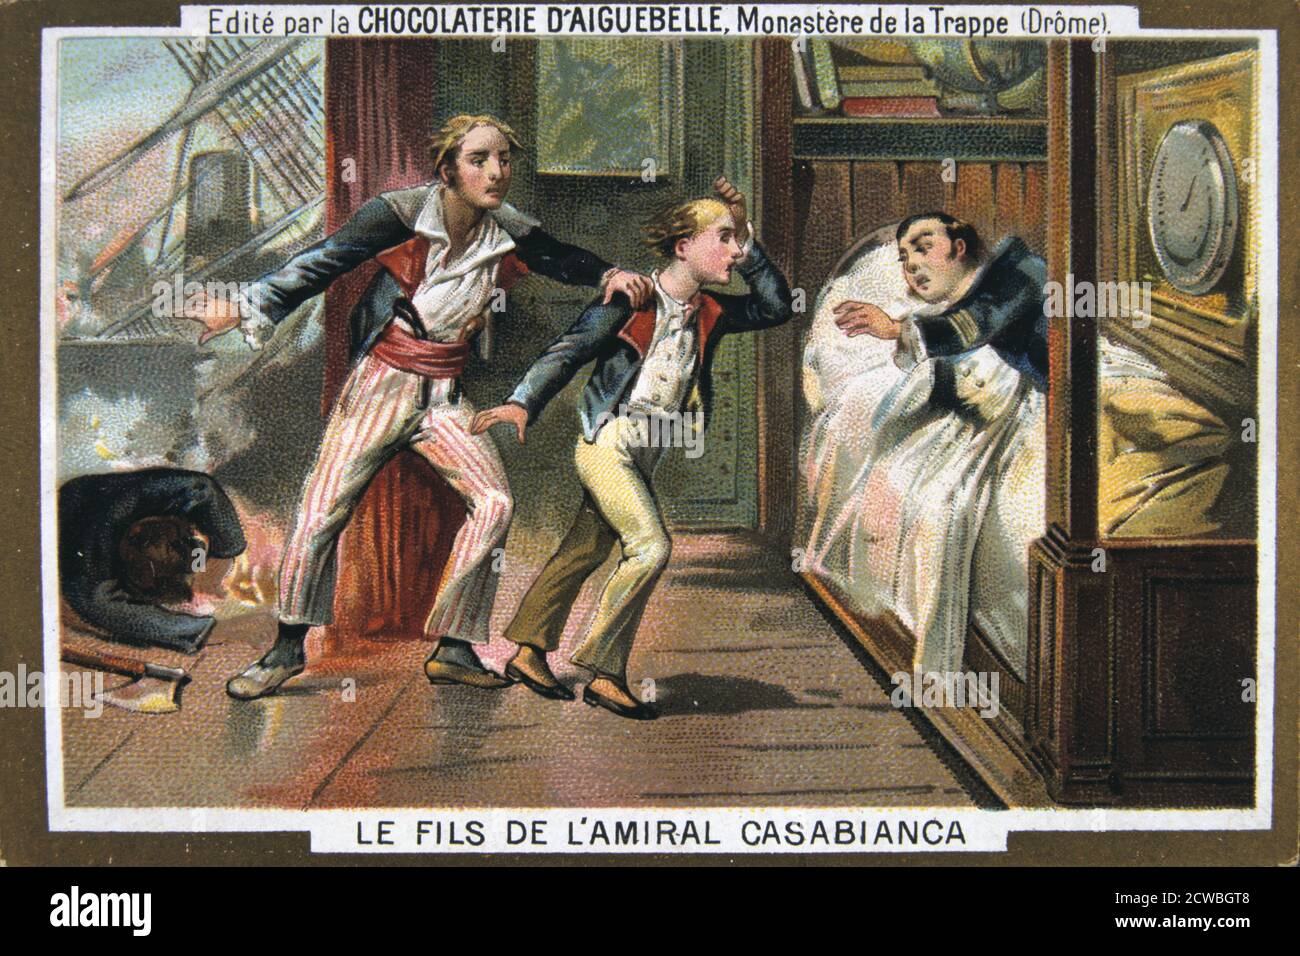 La mort de l'amiral Casabianca et son fils à la bataille du Nil, l'Egypte, 1798, (19e siècle). L'amiral Louis de Casabianca (c1755-1798) a commandé le "Orient", navire amiral de la flotte de Napoléon. Au cours de la bataille du Nil (connue en France comme la Bataille d'Aboukir Bay), le commandant de la flotte a été tué et Casabianca a pris le commandement. En dépit d'être gravement blessé, il est resté à son poste. Son jeune fils, Giocante, a refusé de quitter, et tous les deux morts à bord du "Orient" flamboyant. À partir de la carte d'une série produite par l'usine de chocolat au monastère d'Aiguebelle. Banque D'Images